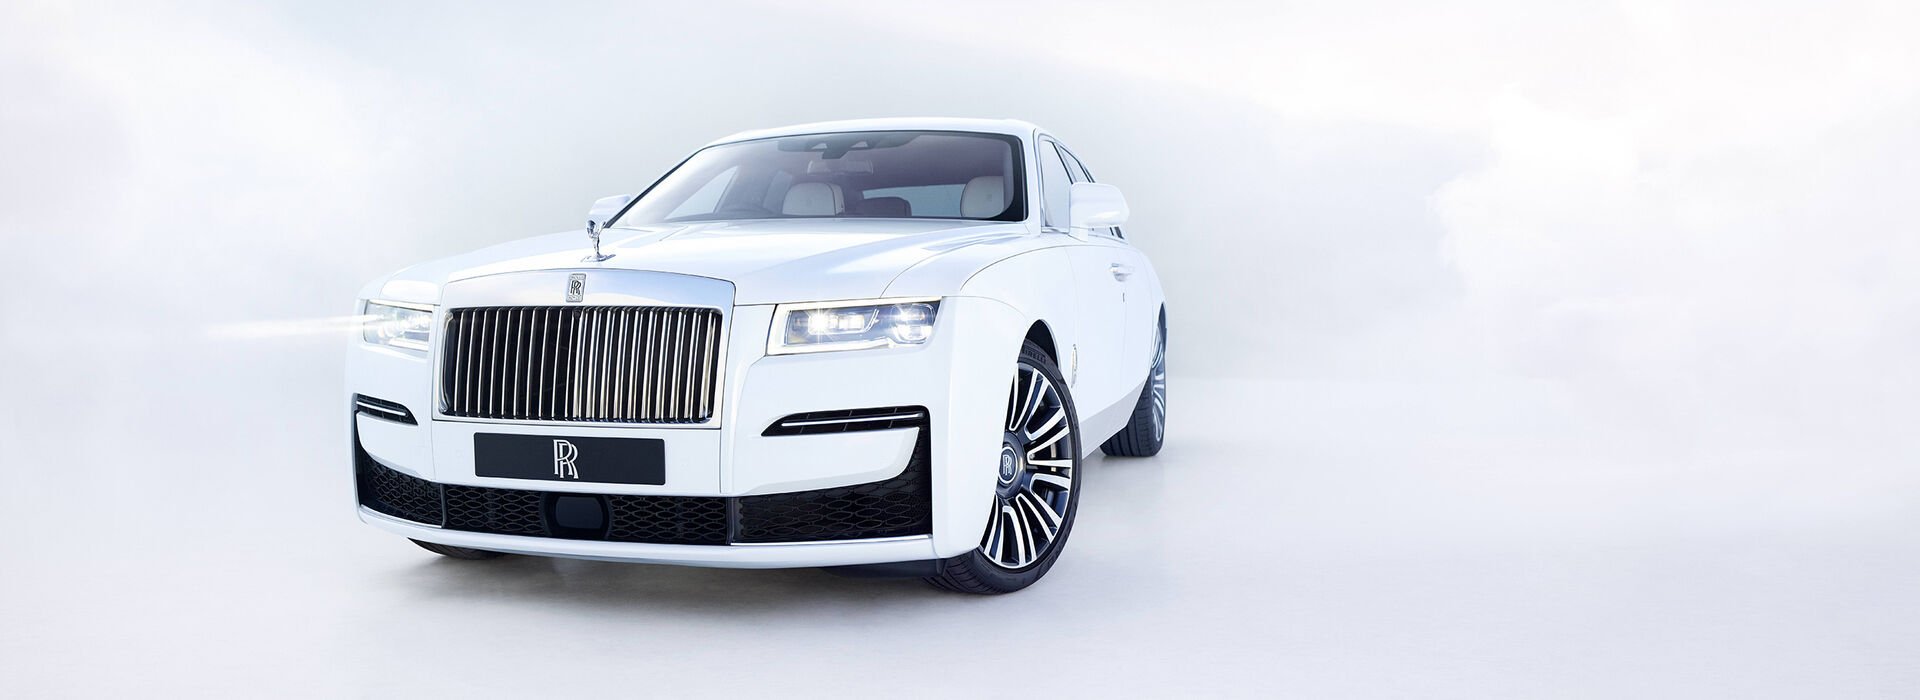 Der neue Rolls-Royce Ghost